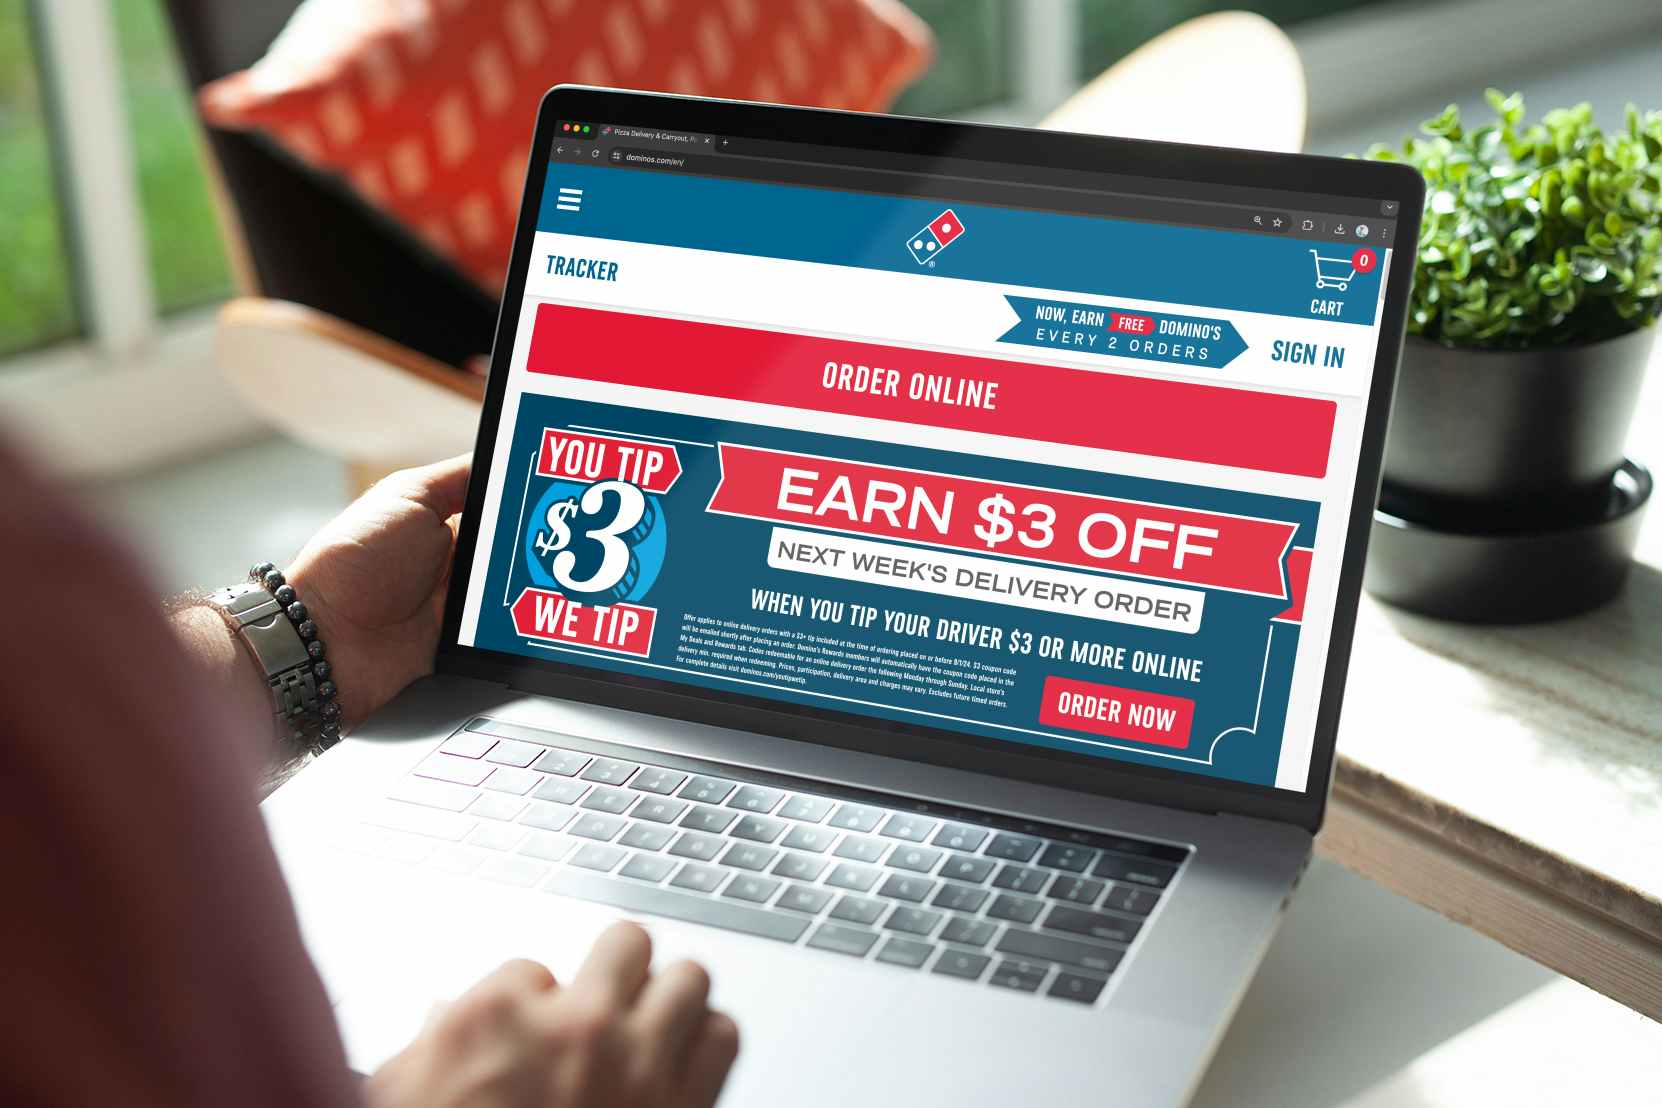 dominos-rewards-offer-tip-3-get-3-dollars-off-coupon-laptop-online-order